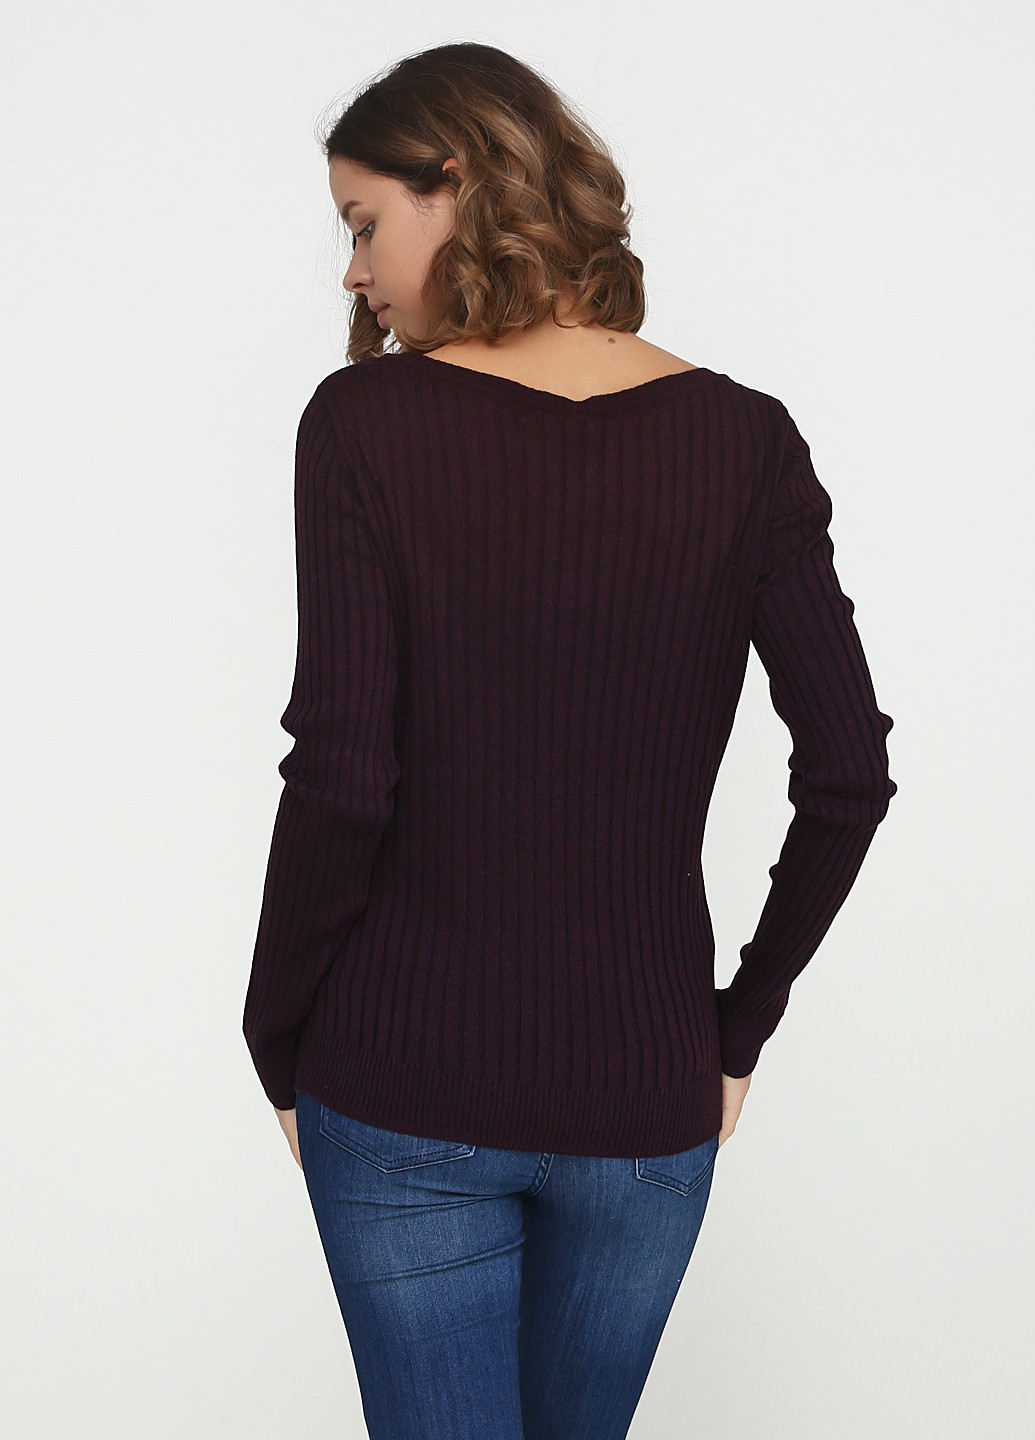 Темно-бордовый демисезонный пуловер пуловер Basic